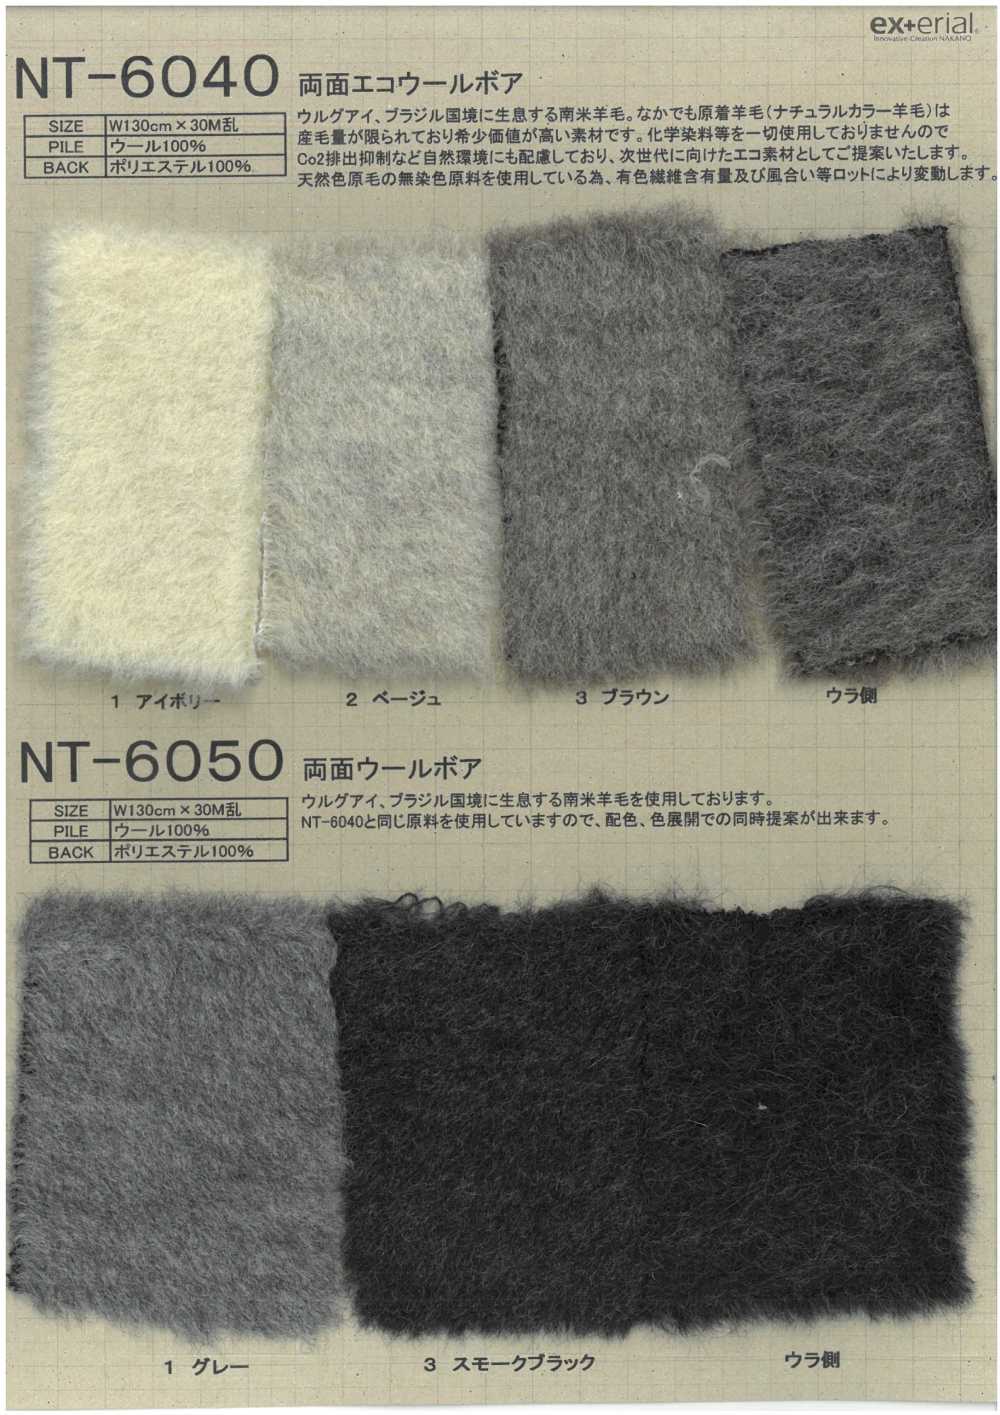 NT-6050 Piel Artesanal [boa De Lana De Doble Cara][Fabrica Textil] Industria De La Media Nakano